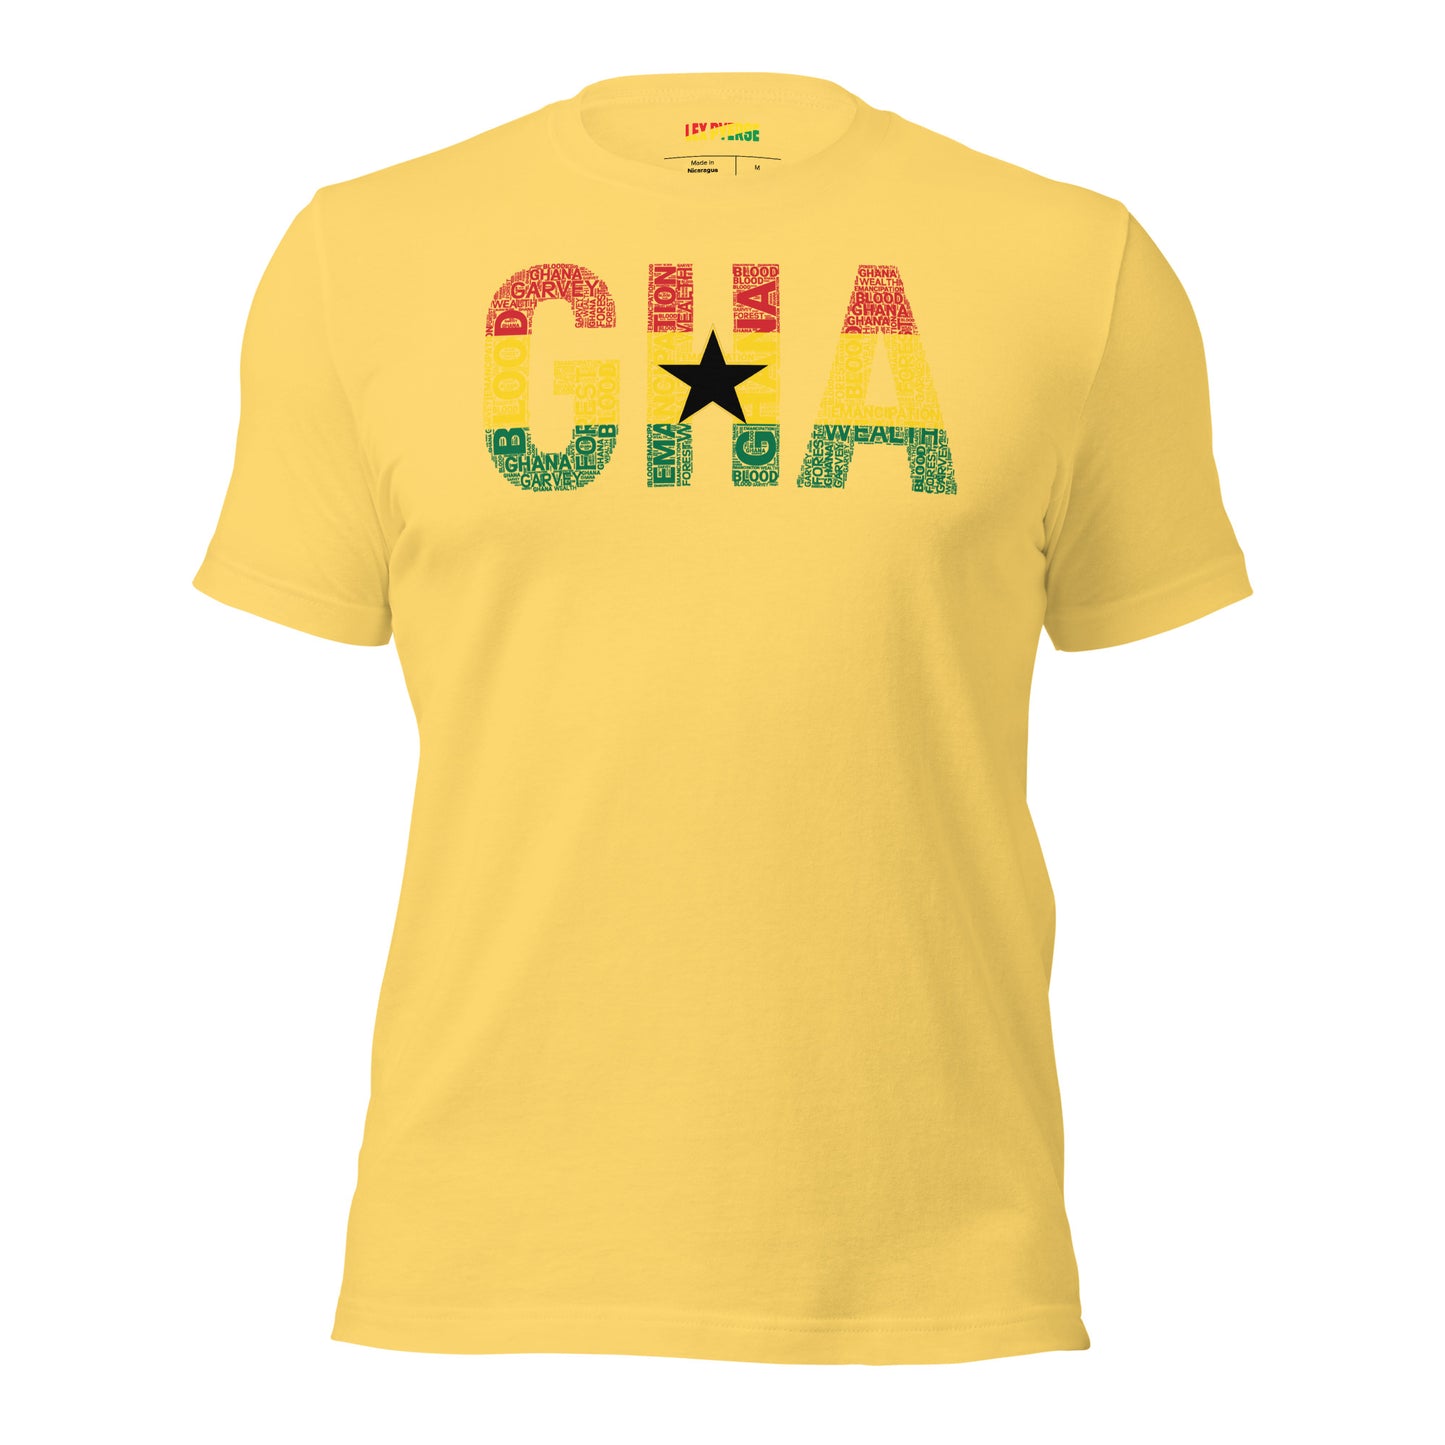 GHANA Abbreviated National Flag Inspired Word Cluster Short-Sleeve Unisex T-Shirt